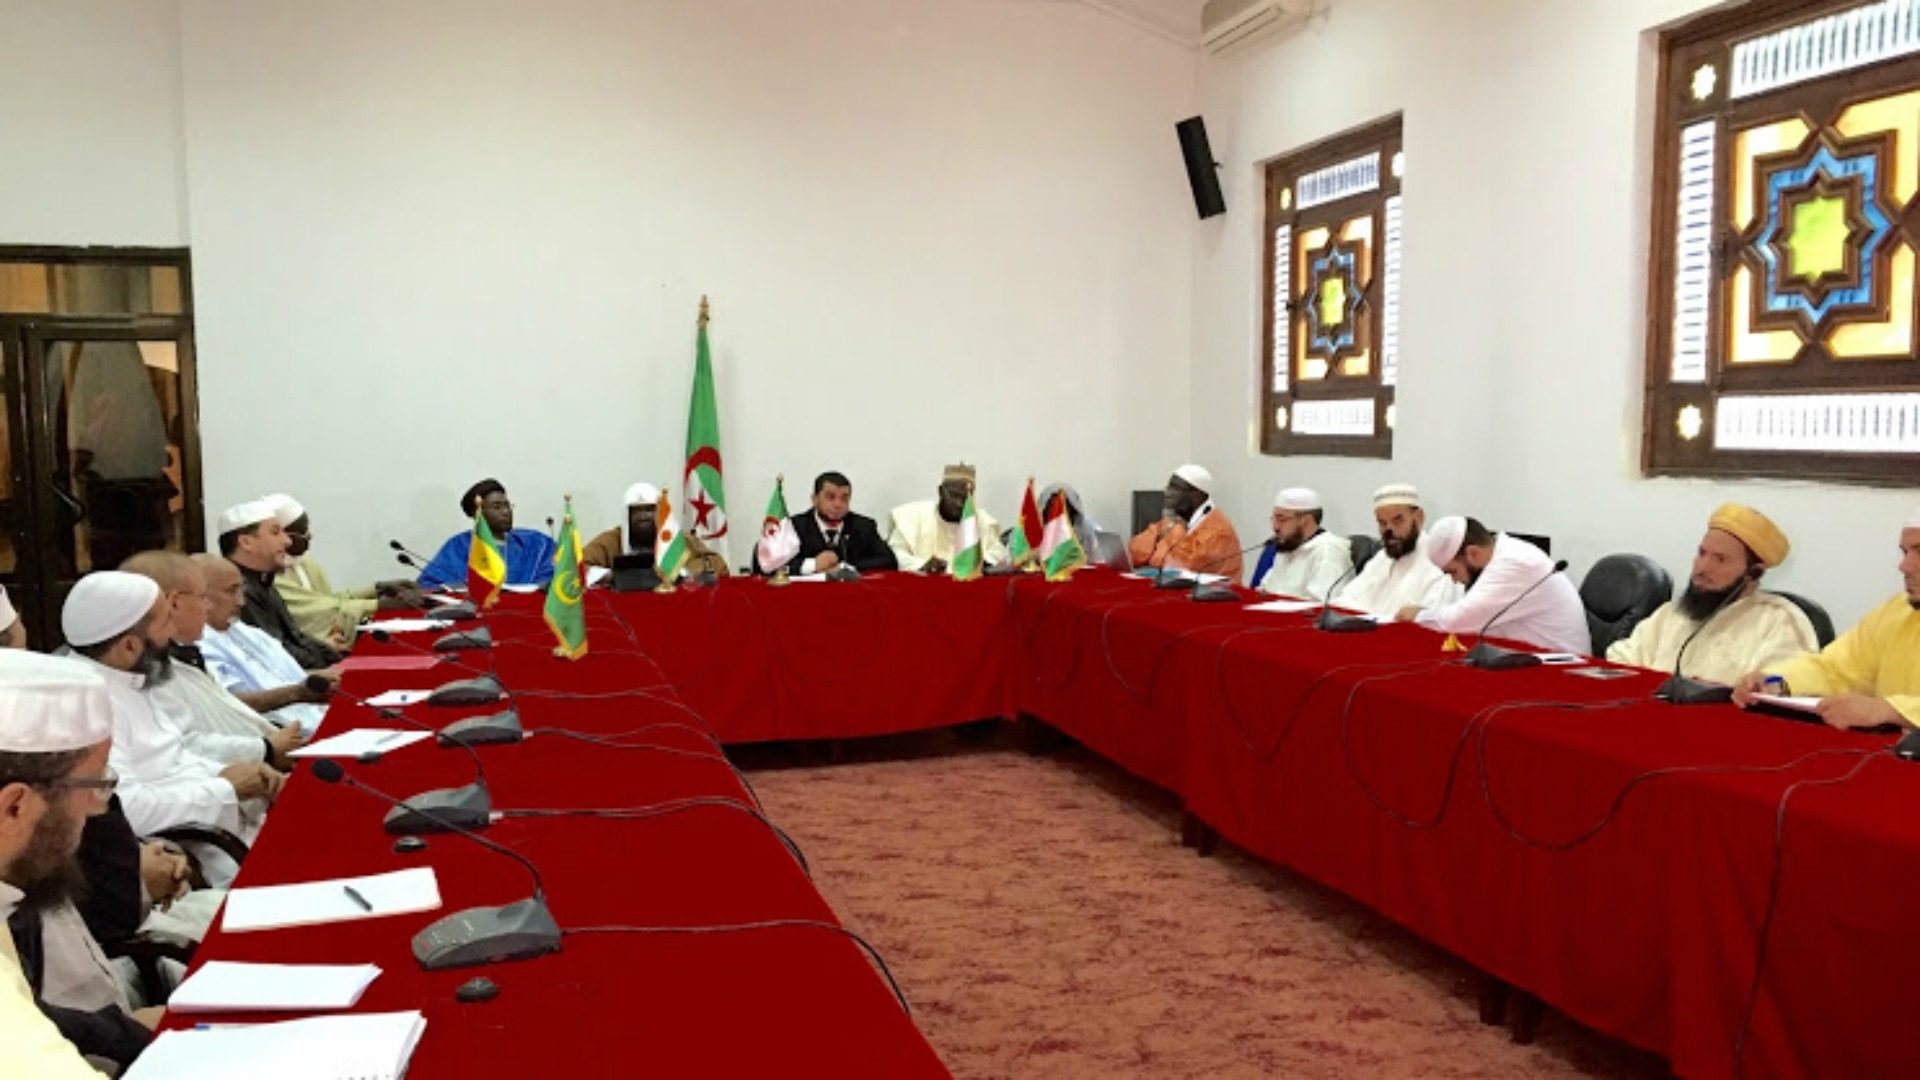 Réunion à Alger de la Ligue des oulémas, prêcheurs et imams des pays du Sahel en 2015 | © Cheikh Boureima Abdou Daouda